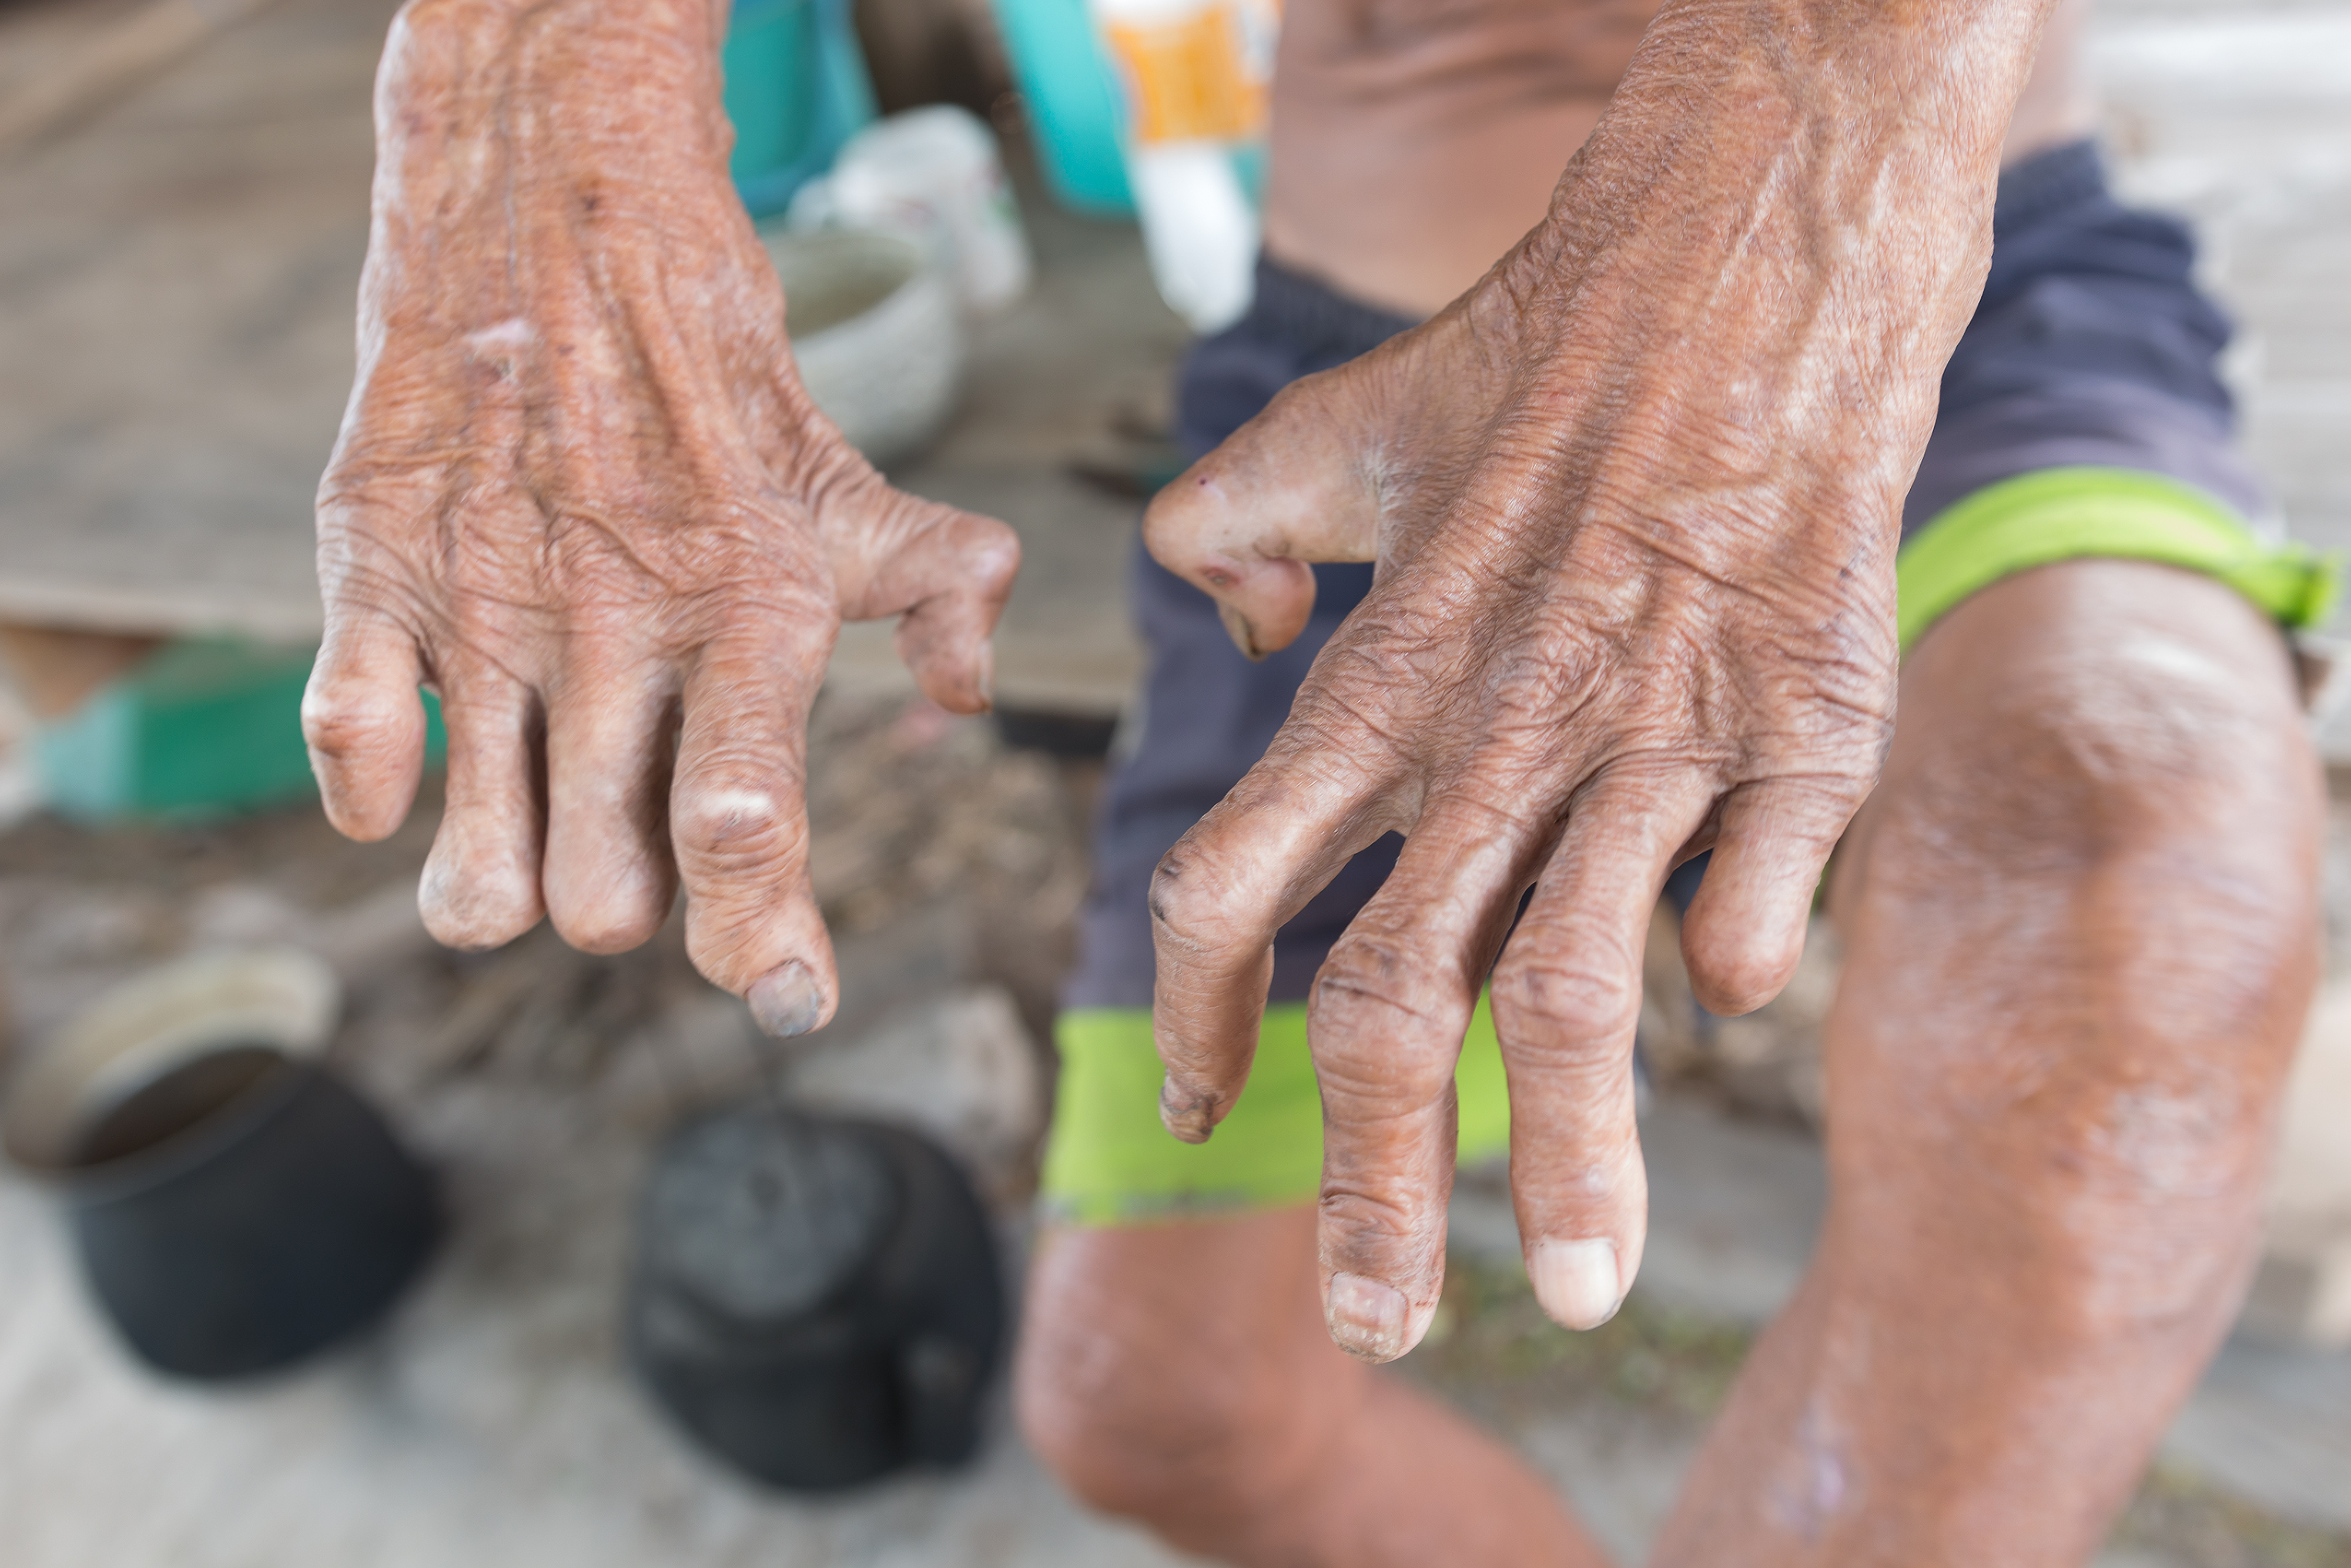 Les mains en griffe sont typiques d'une atteinte neurologique des membres causée par la lèpre. © r frank29052515, Adobe Stock